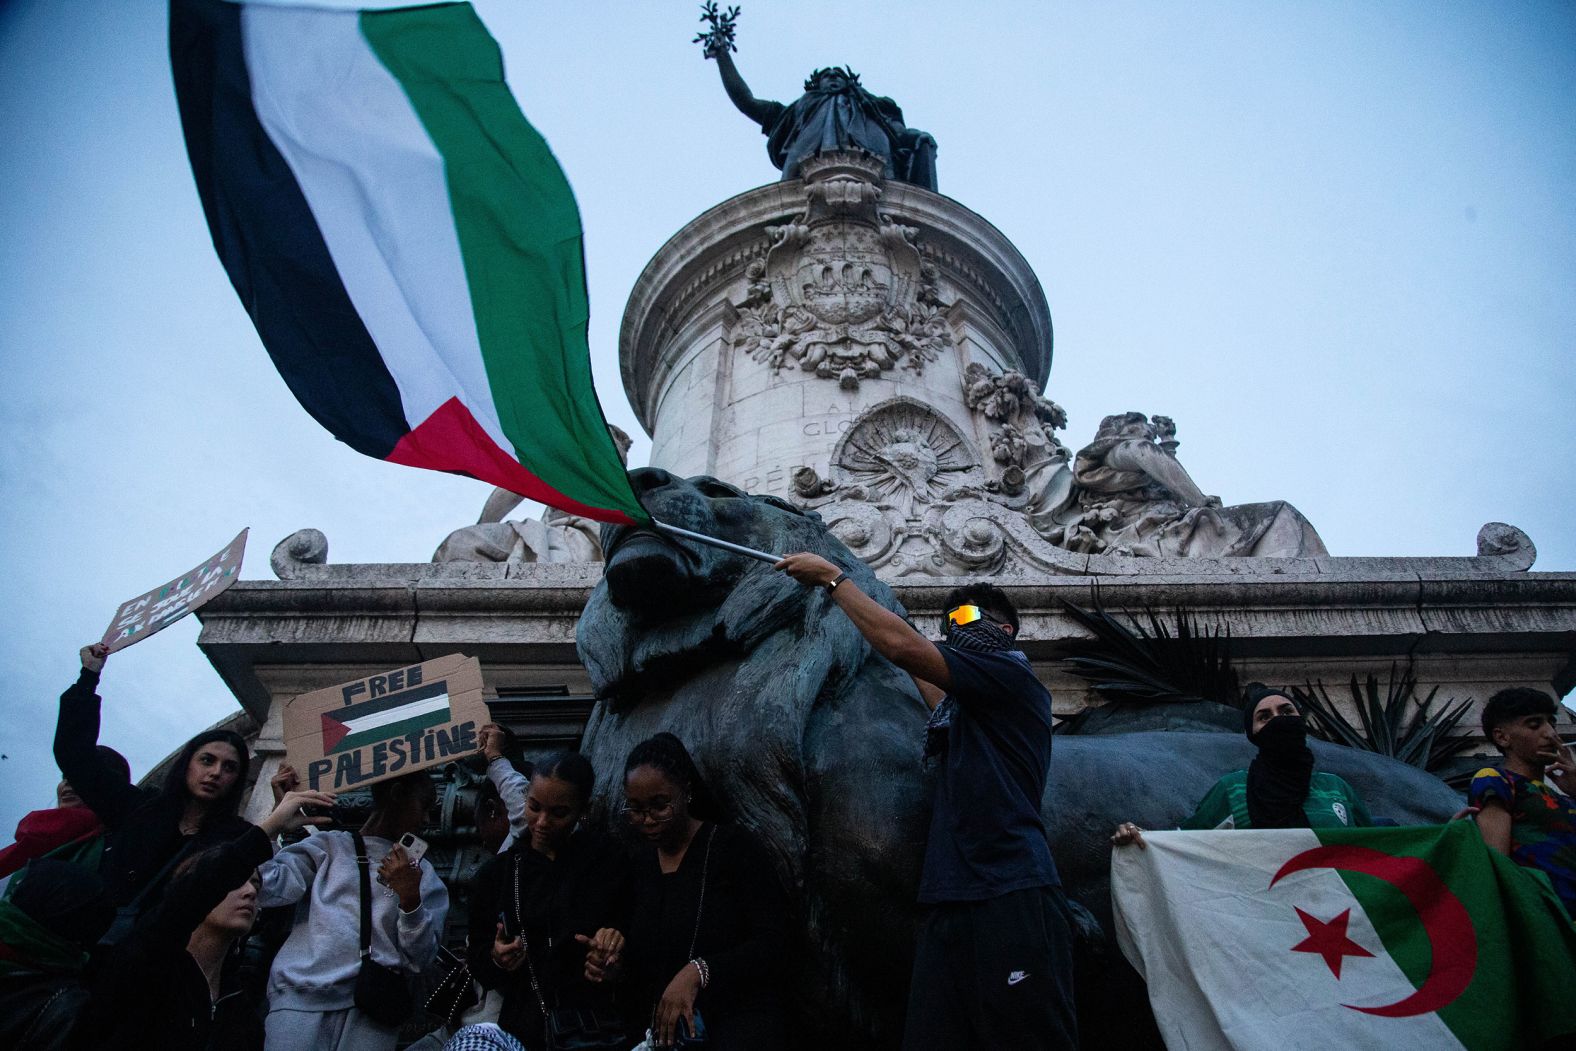 Demonstrators climb up the Monument à la République in Paris during a pro-Palestinian rally on Thursday, October 12.